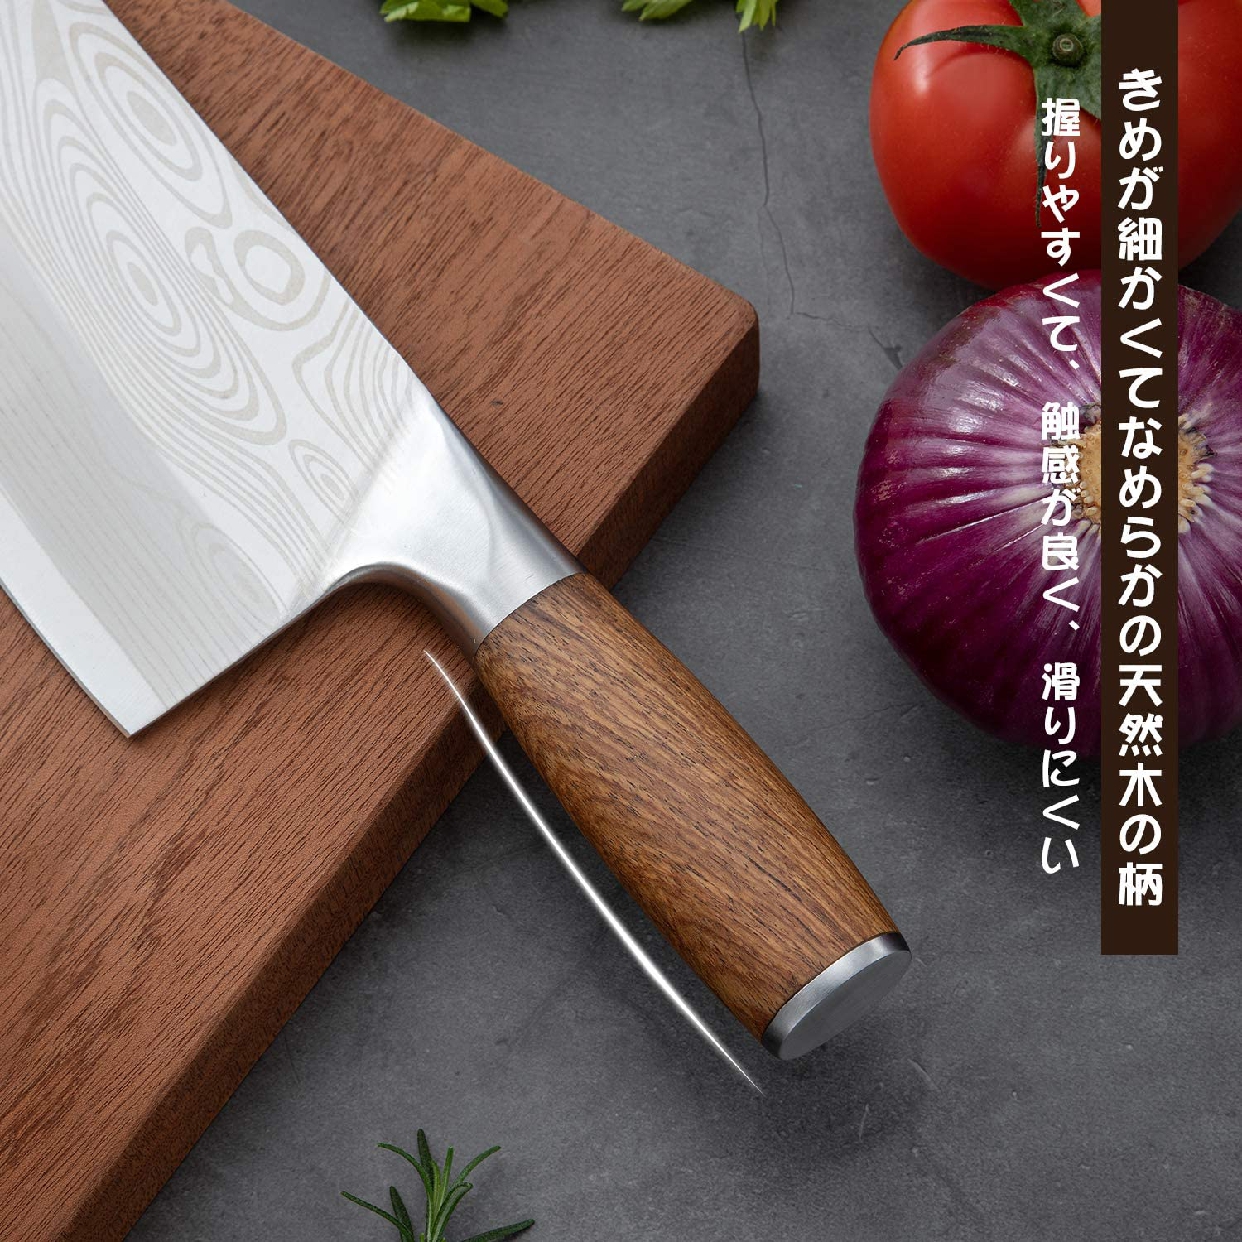 MUKAI(ムカイ) ステンレス キッチンナイフの商品画像4 